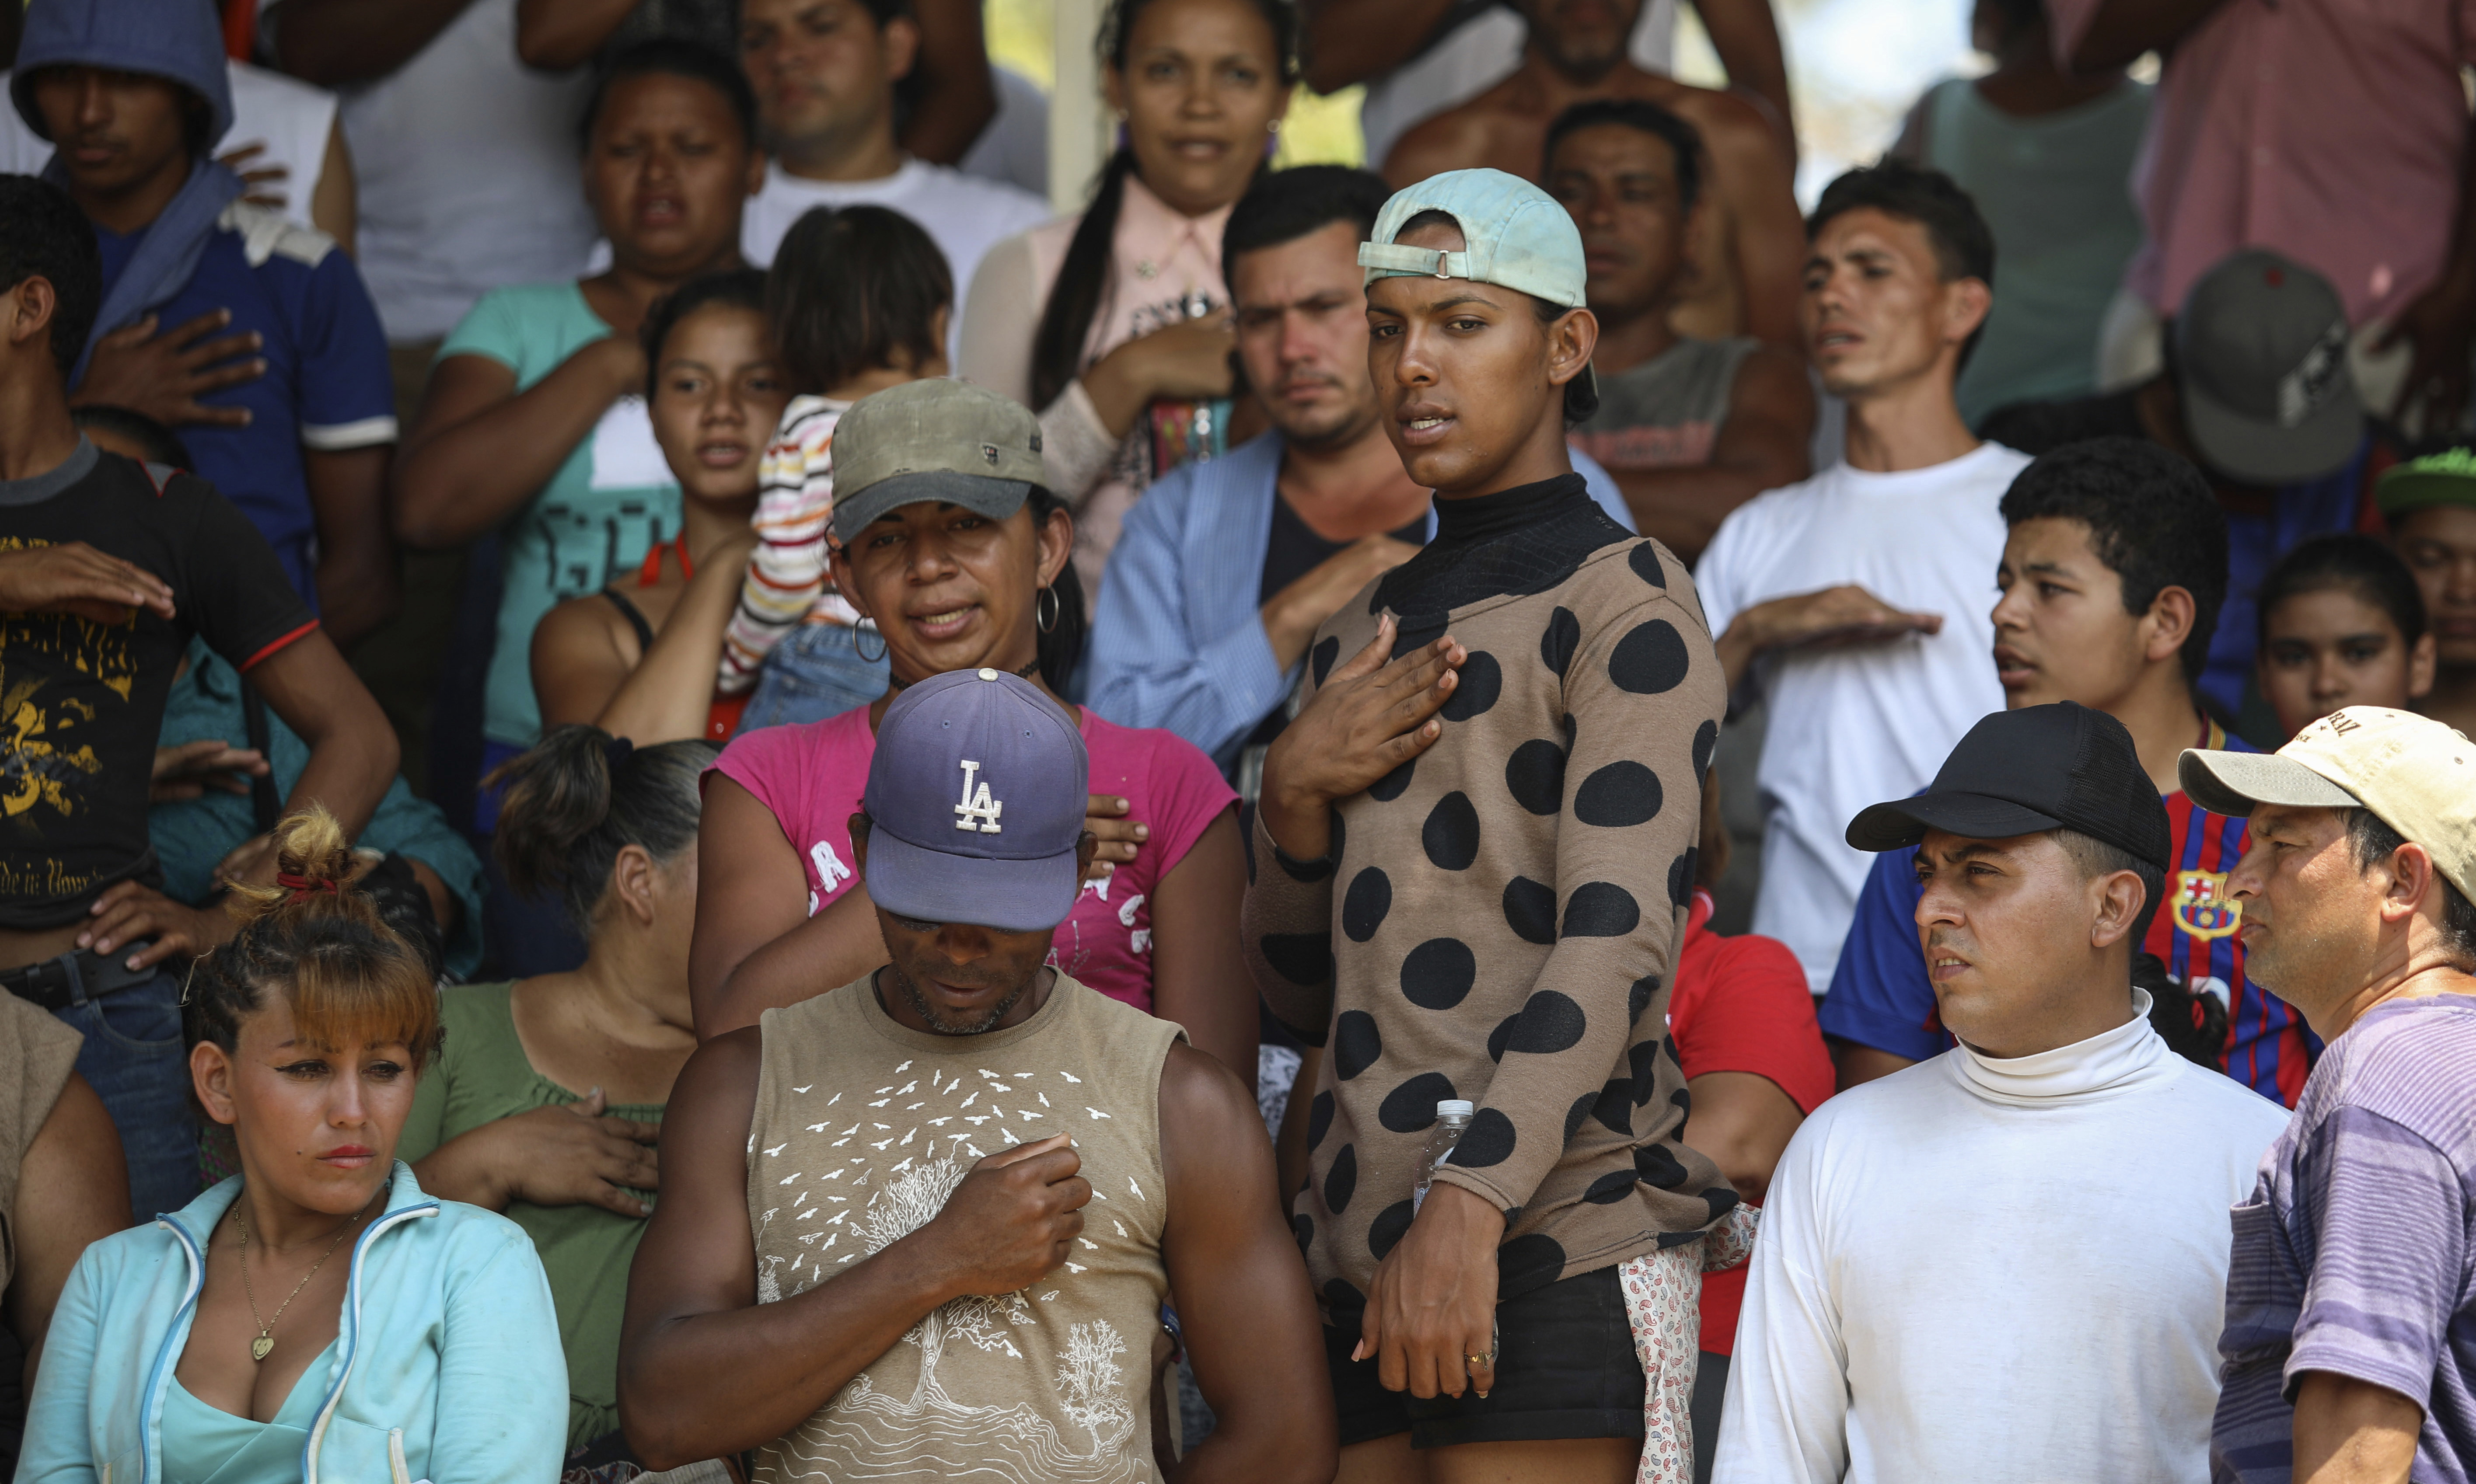 Mexico Migrant Caravan